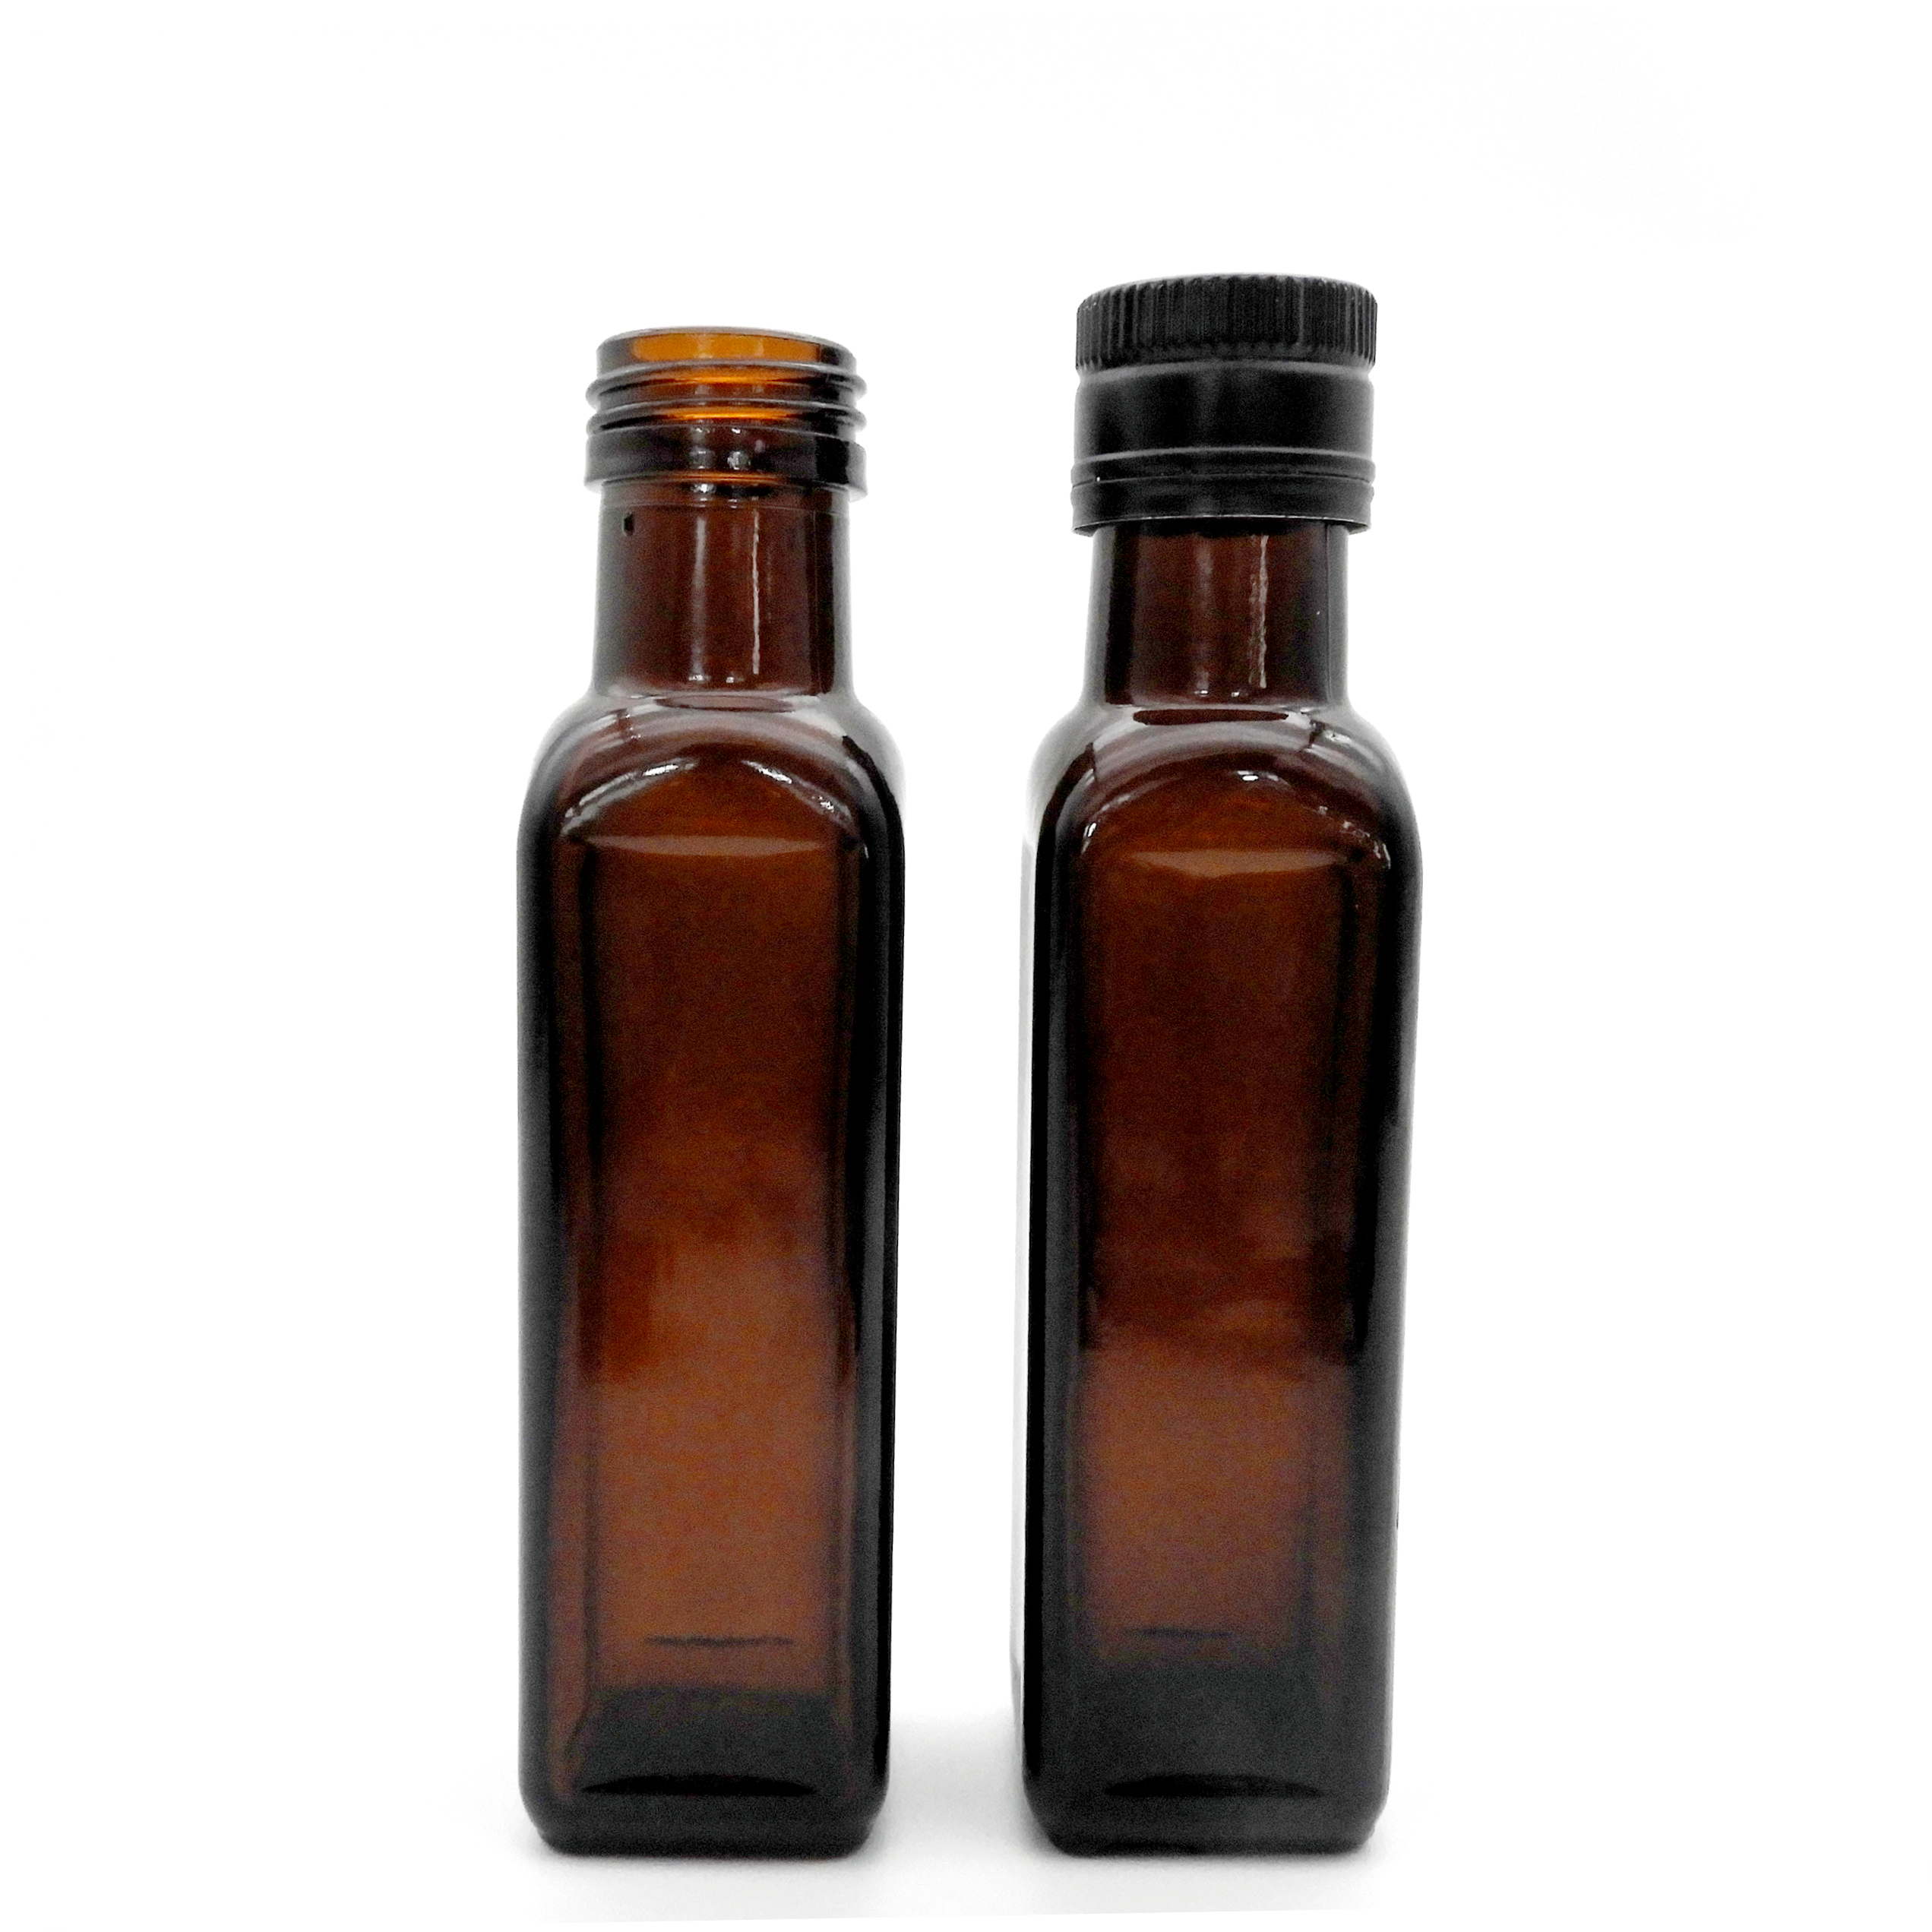 100 मिलीलीटर स्क्वायर जैतून का तेल की बोतल (1)